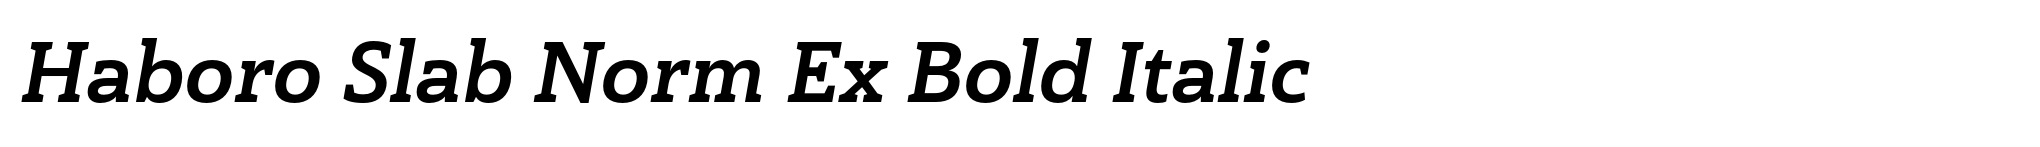 Haboro Slab Norm Ex Bold Italic image